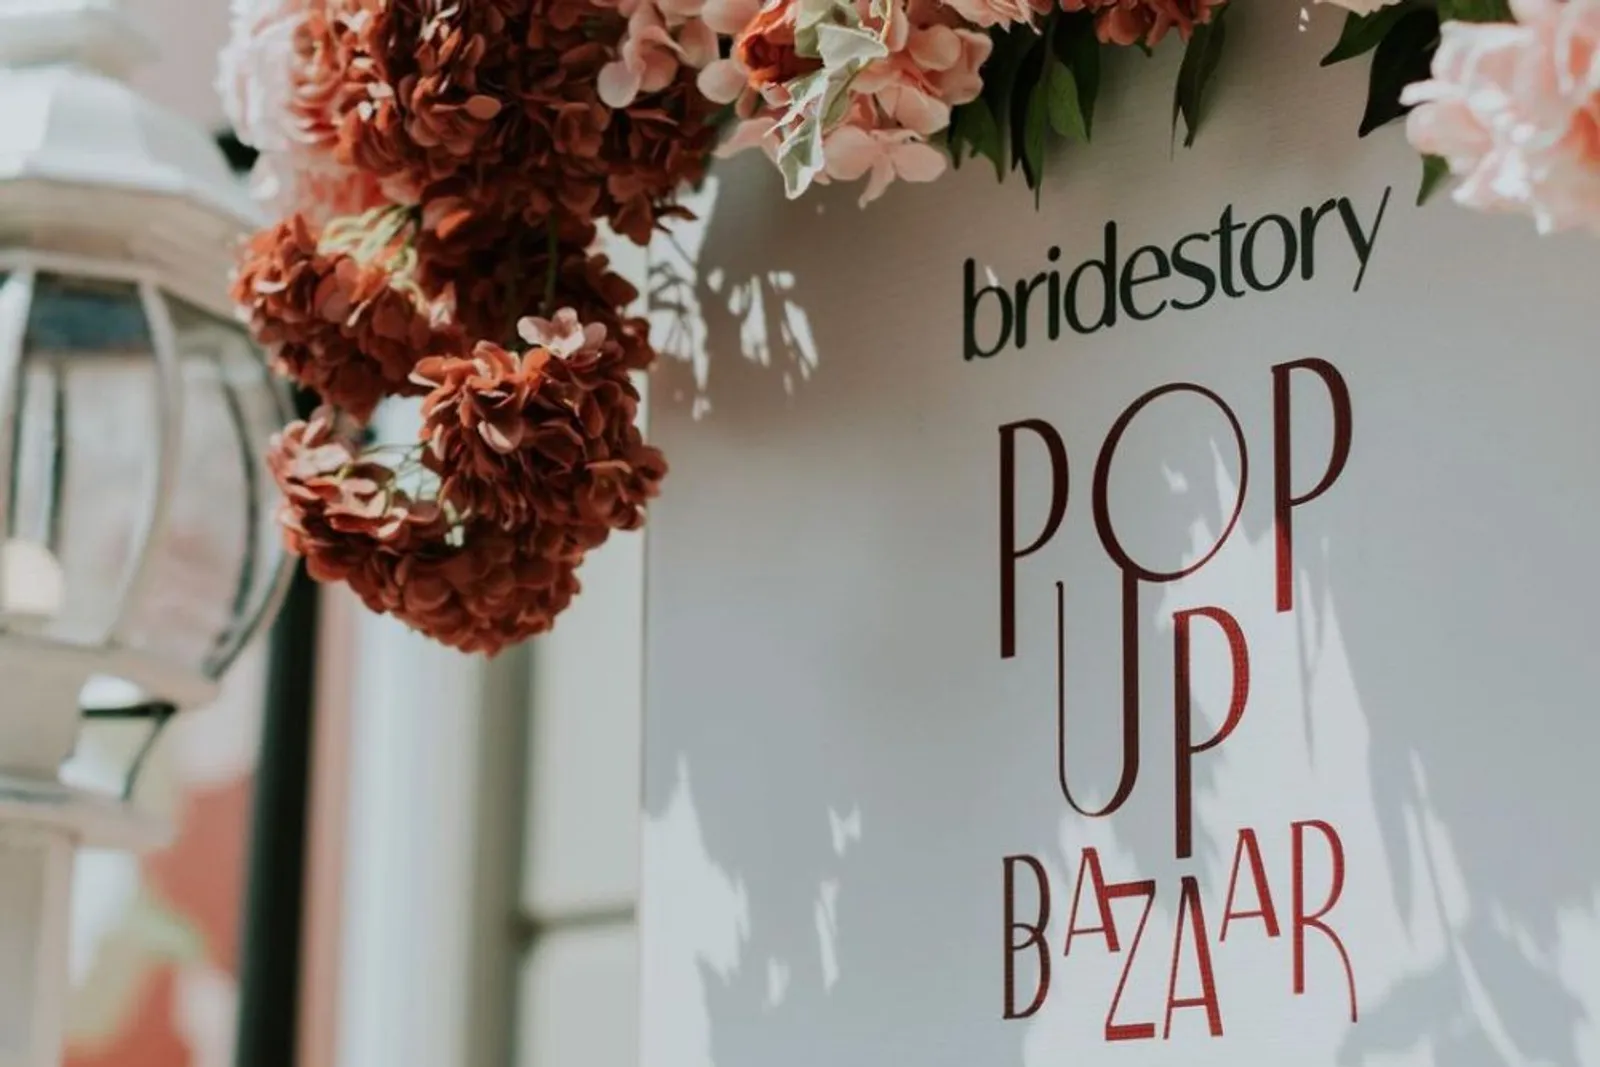 7 Keseruan yang Bisa Kamu Temui di Bridestory Pop Up Bazaar